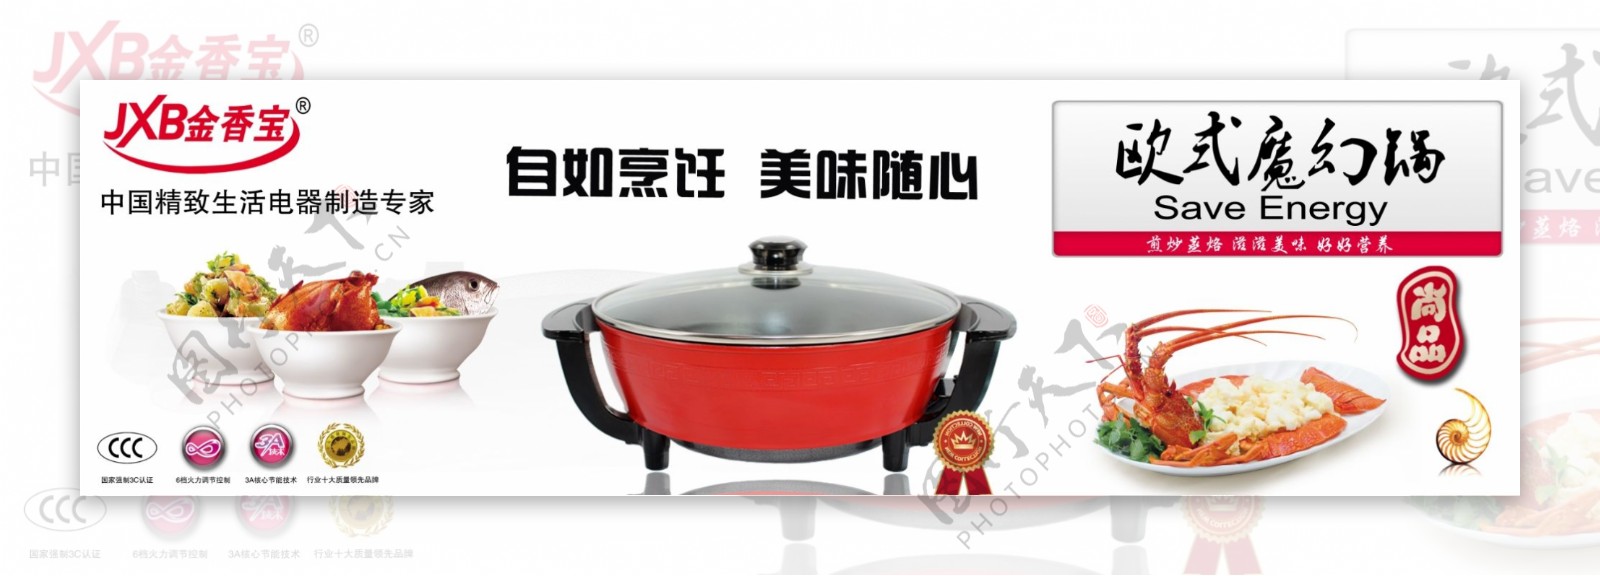 金香宝欧式圆锅系列创意广告图片